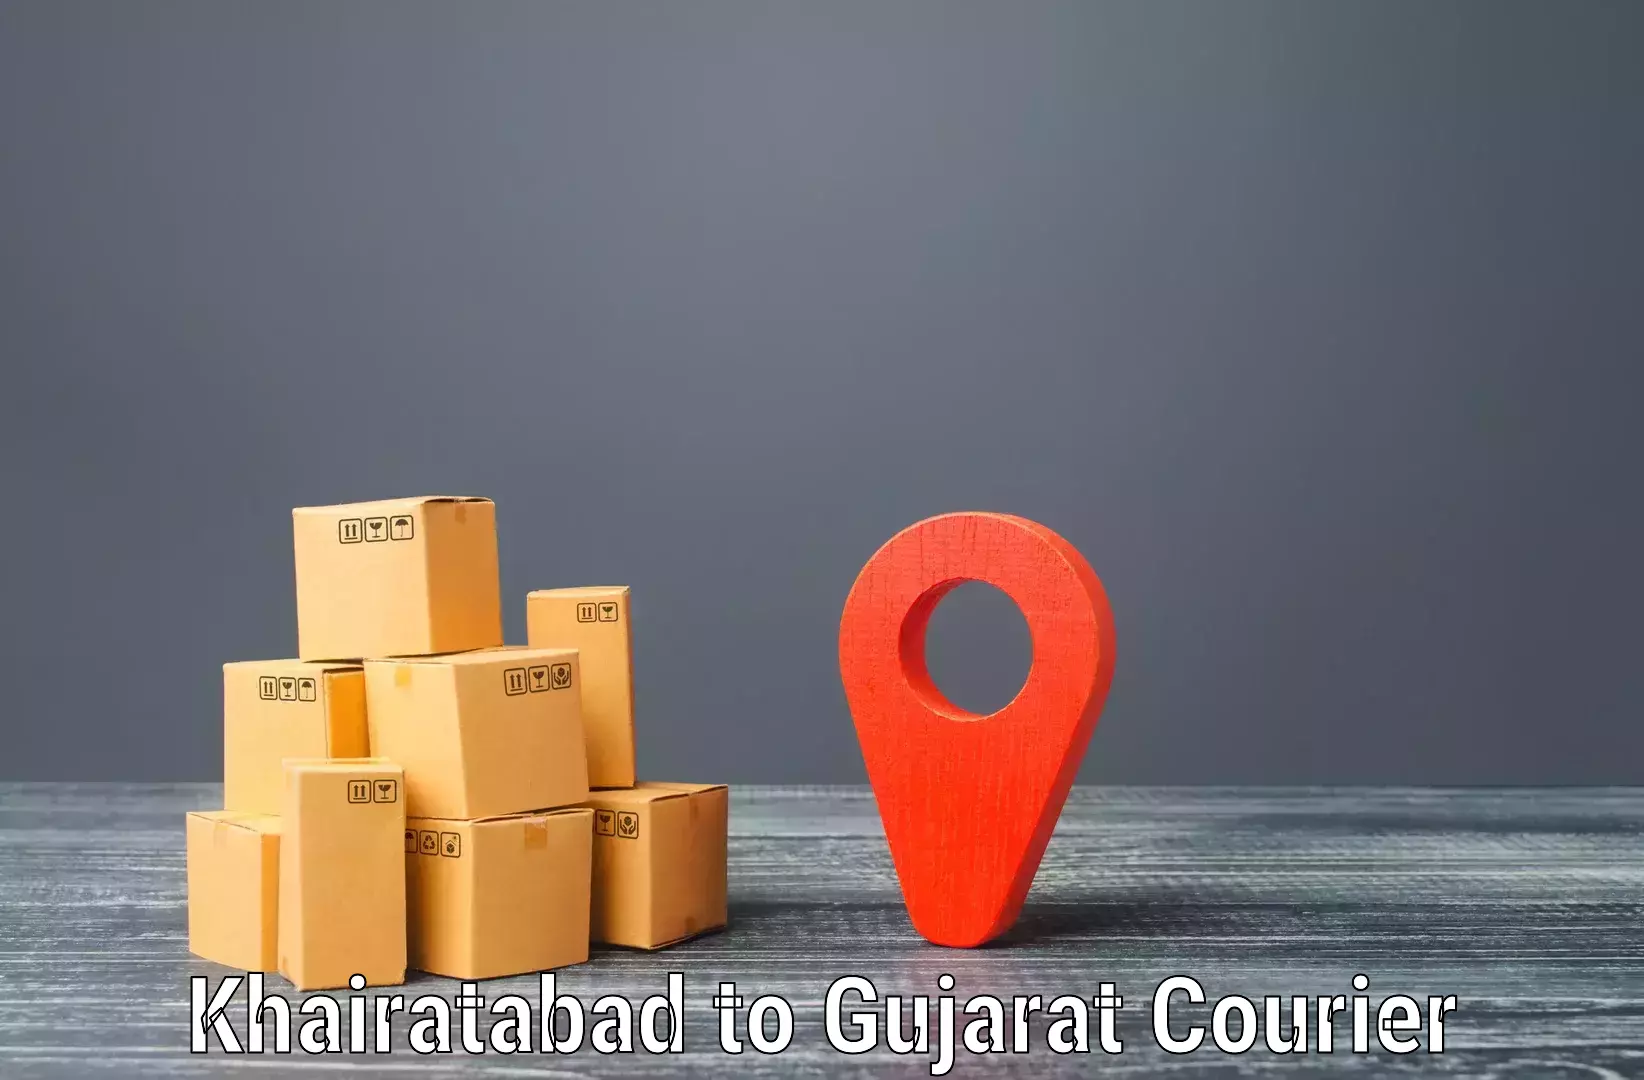 Package tracking Khairatabad to IIIT Vadodara